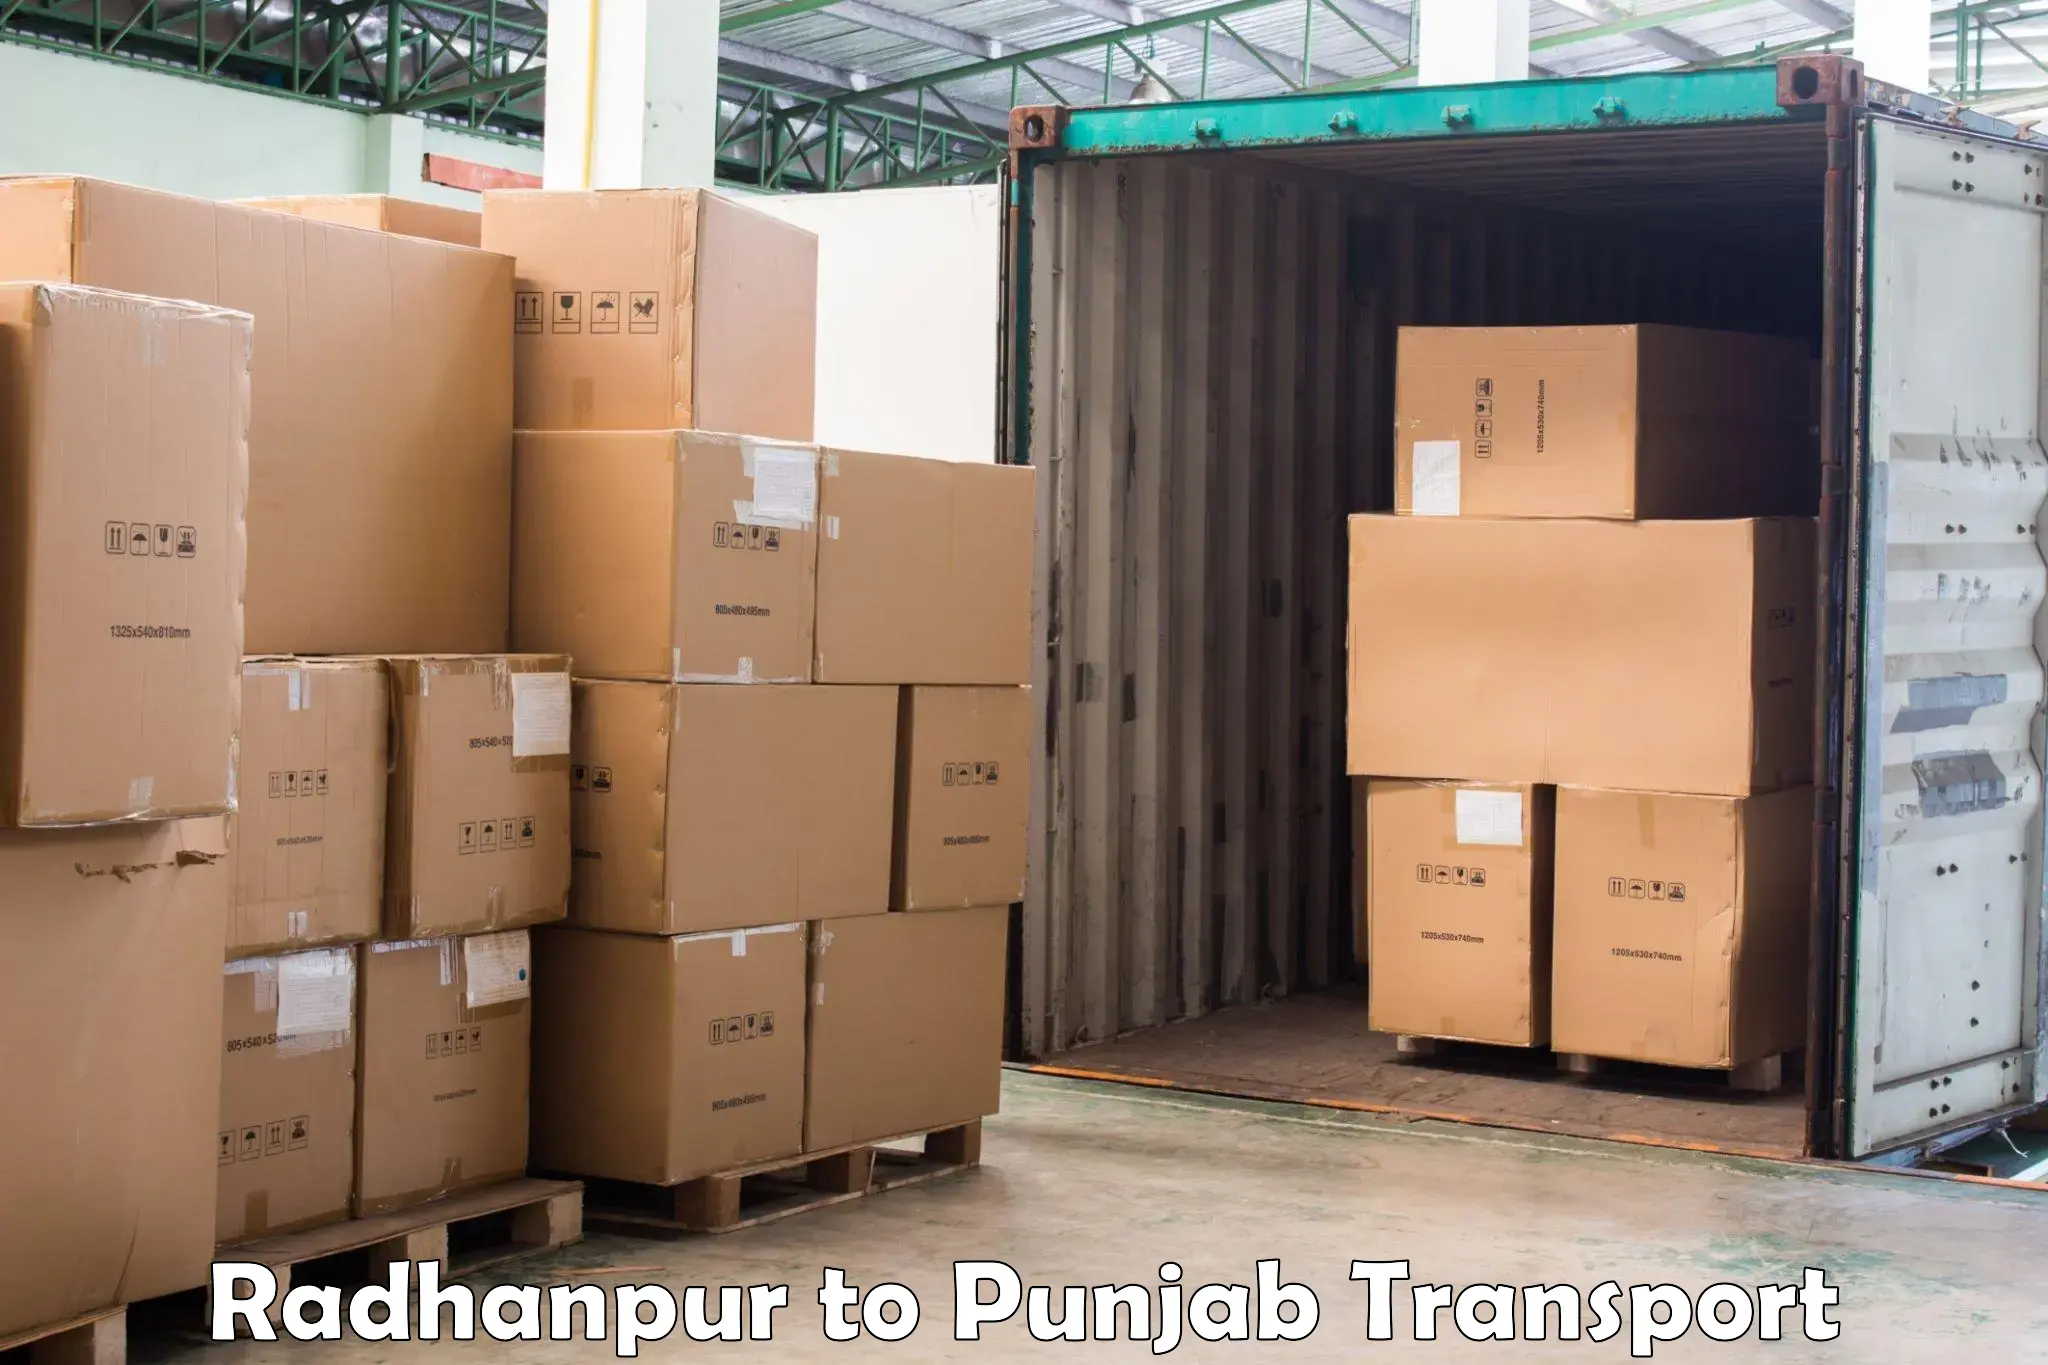 Interstate transport services Radhanpur to Phillaur